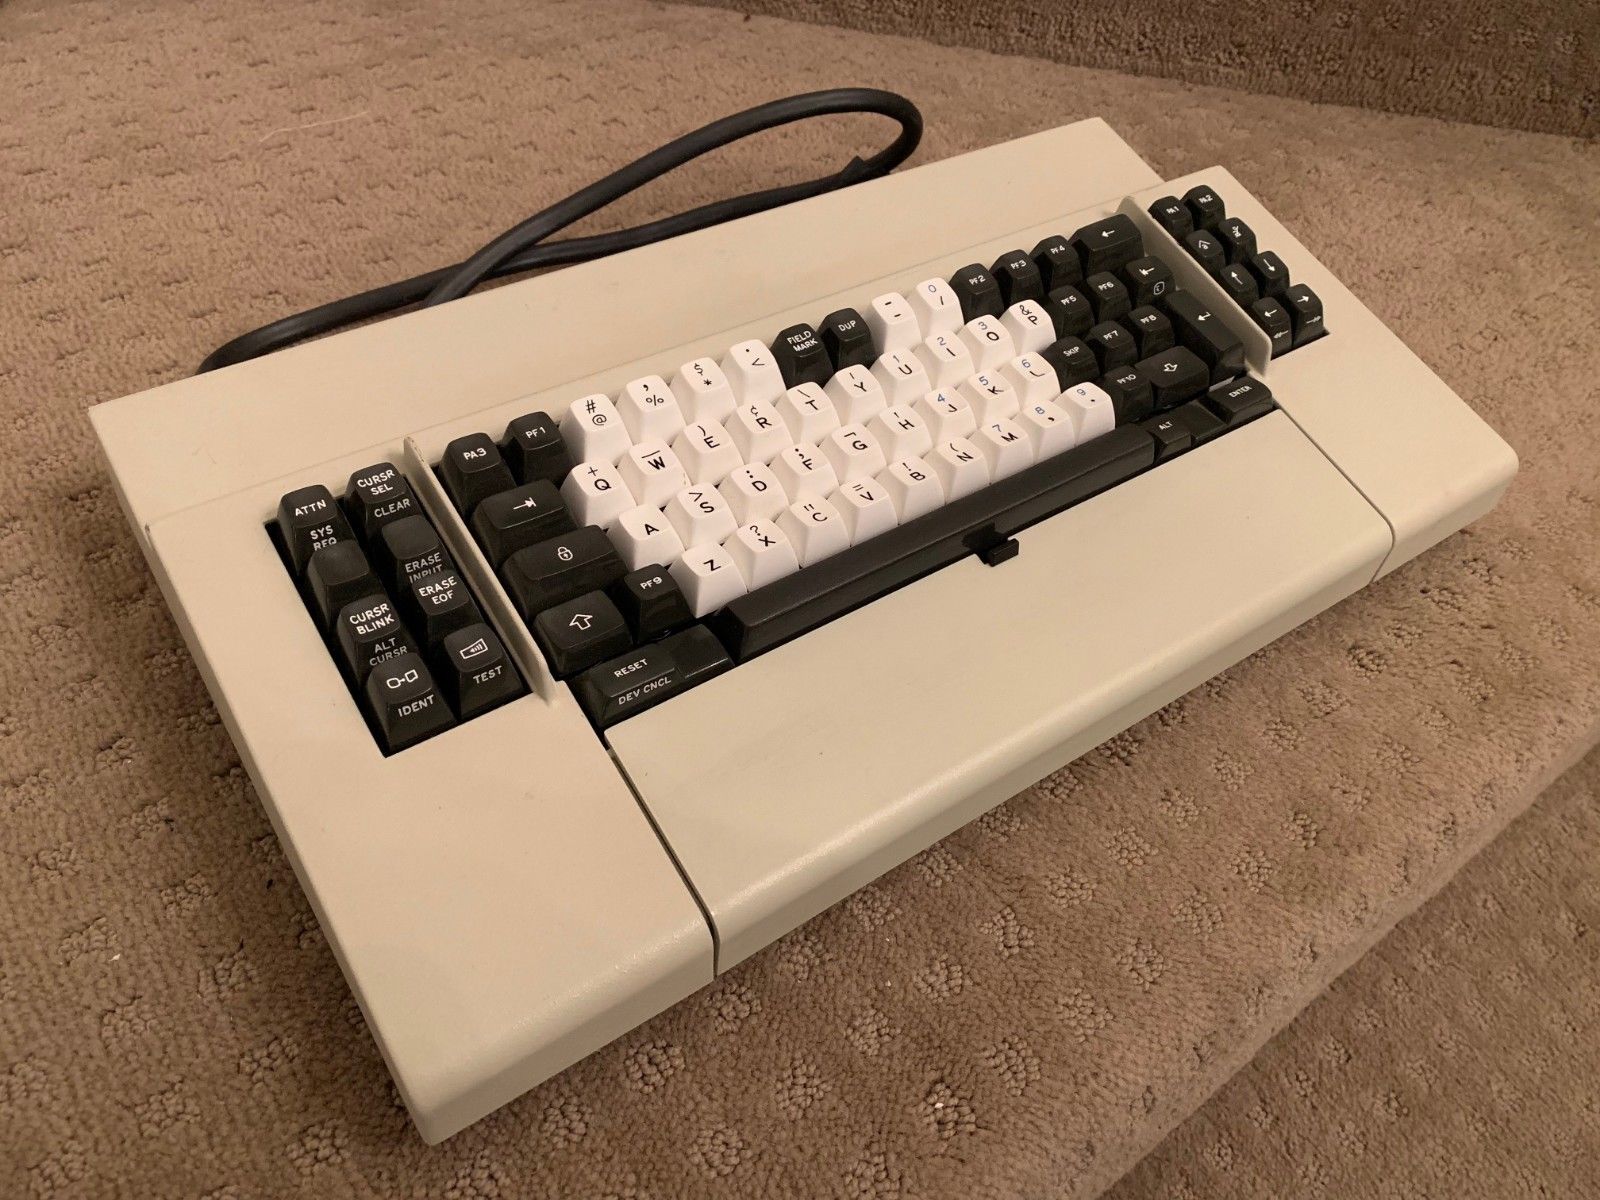 IBM NOS Beam Spring Keyboard 1977 1742710 745810 G674 120479X0 1645102 (12).jpg